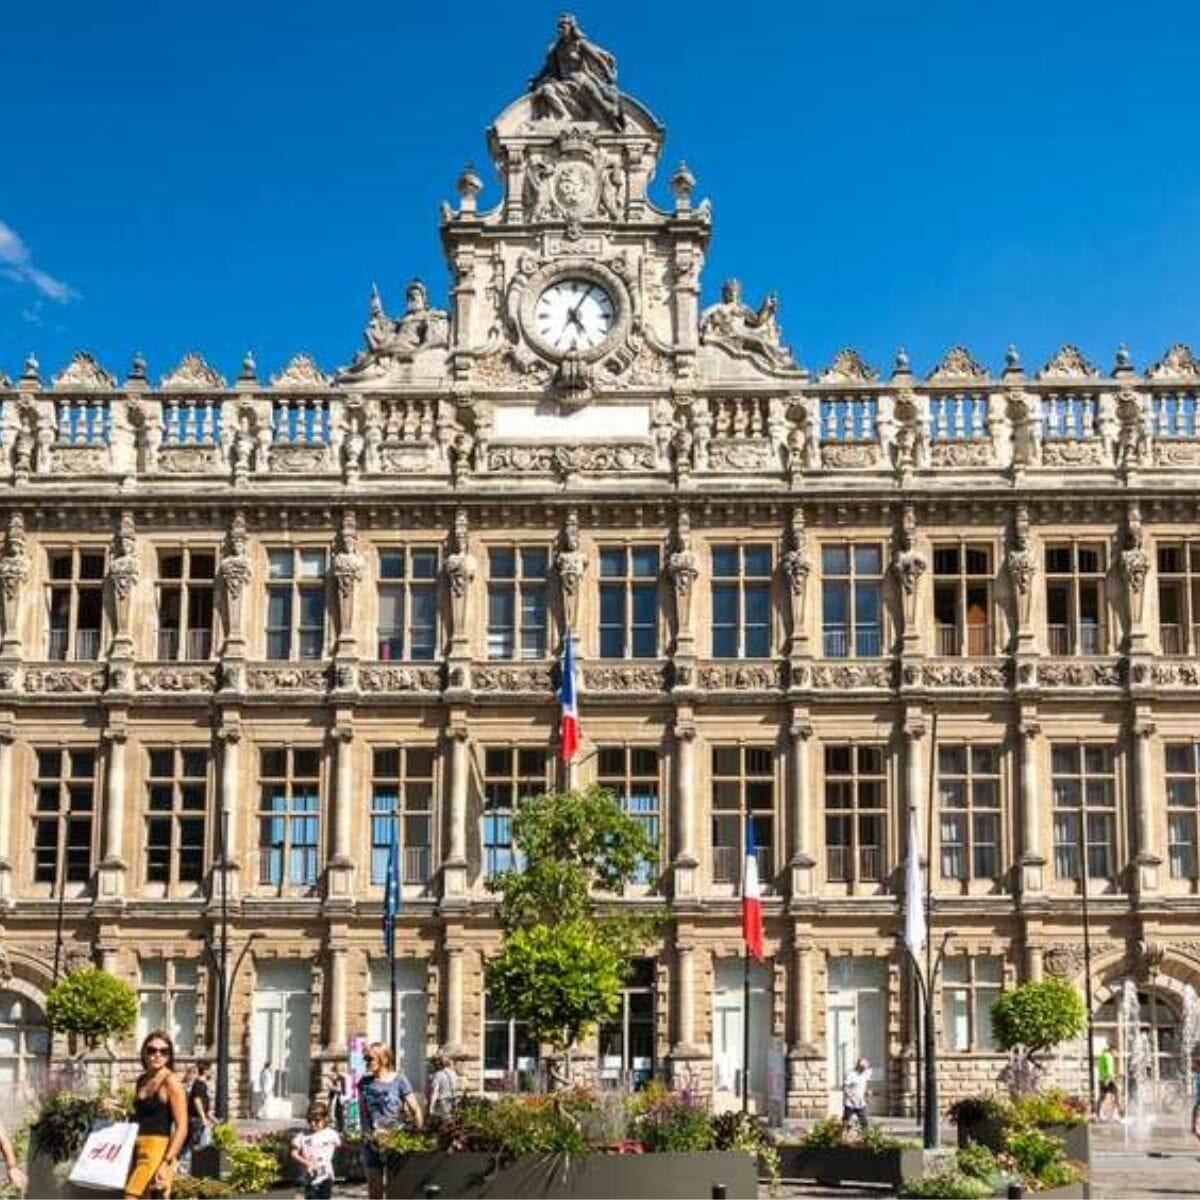 Hotel de ville Valenciennes - HOMZA spécialiste de la rénovation énergétique